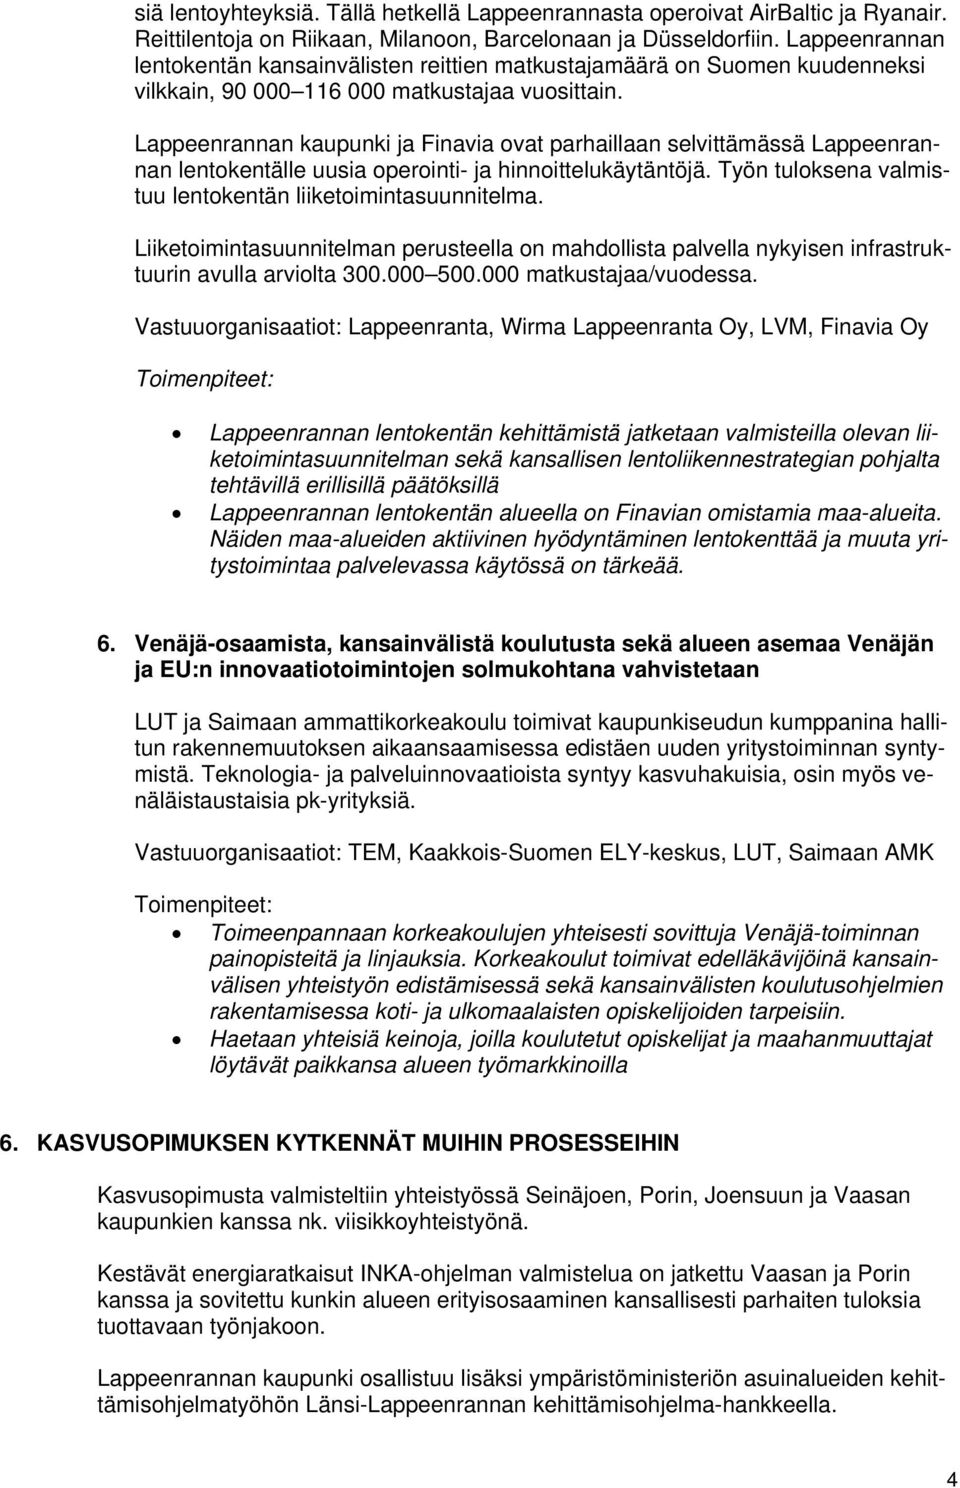 Lappeenrannan kaupunki ja Finavia ovat parhaillaan selvittämässä Lappeenrannan lentokentälle uusia operointi- ja hinnoittelukäytäntöjä. Työn tuloksena valmistuu lentokentän liiketoimintasuunnitelma.